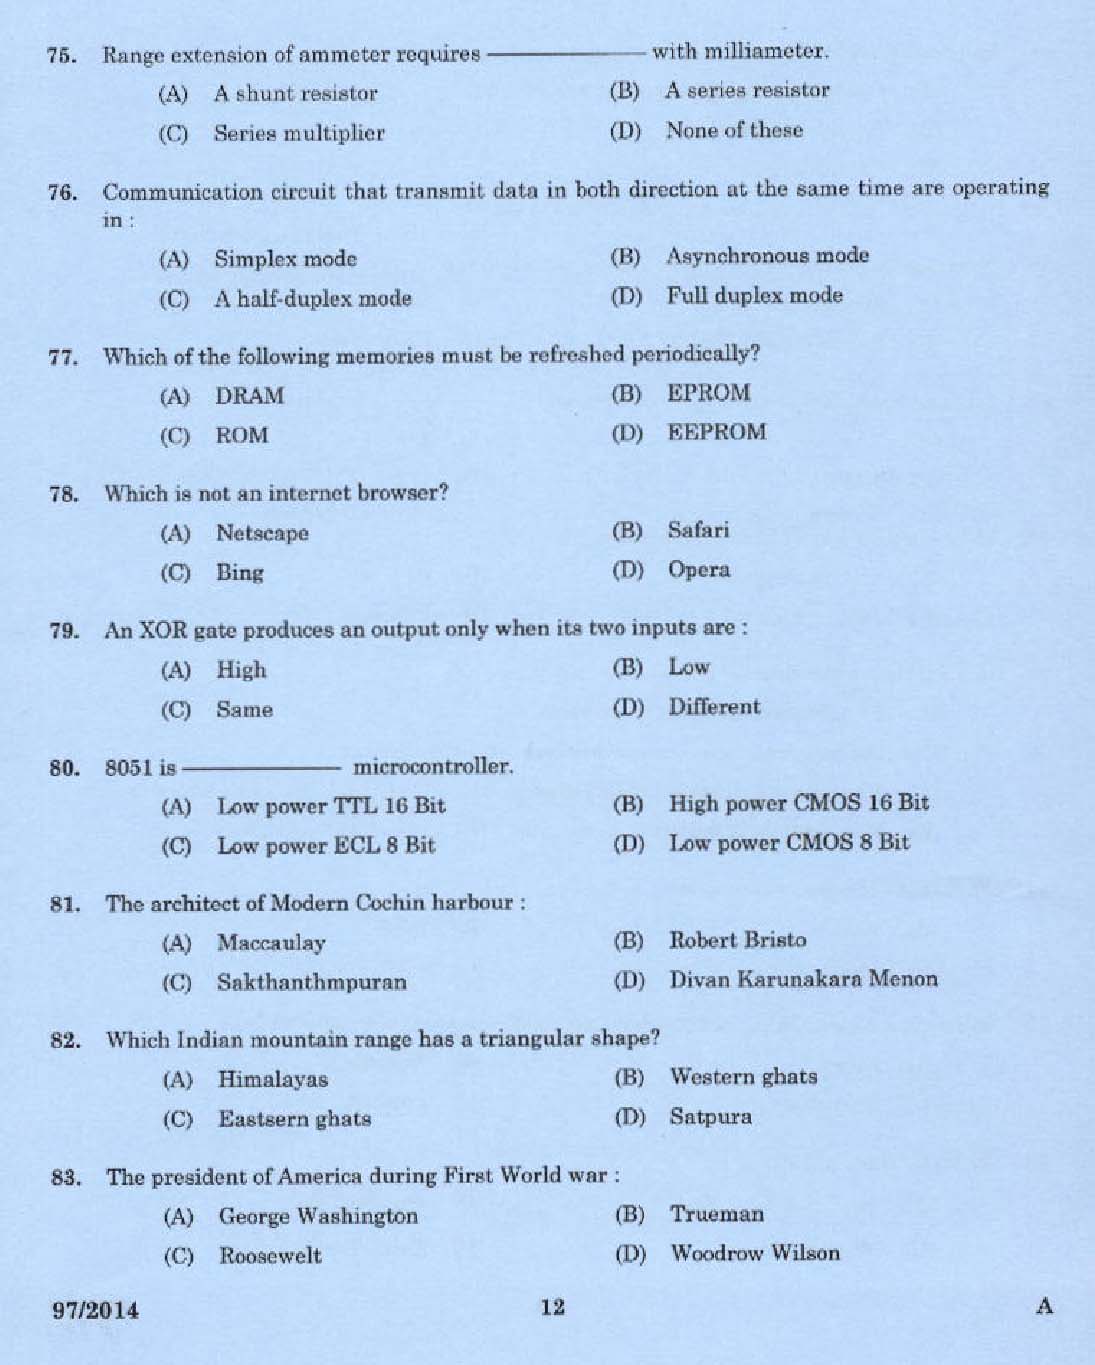 Kerala PSC Junior Instructor Exam Question Paper Code 972014 10